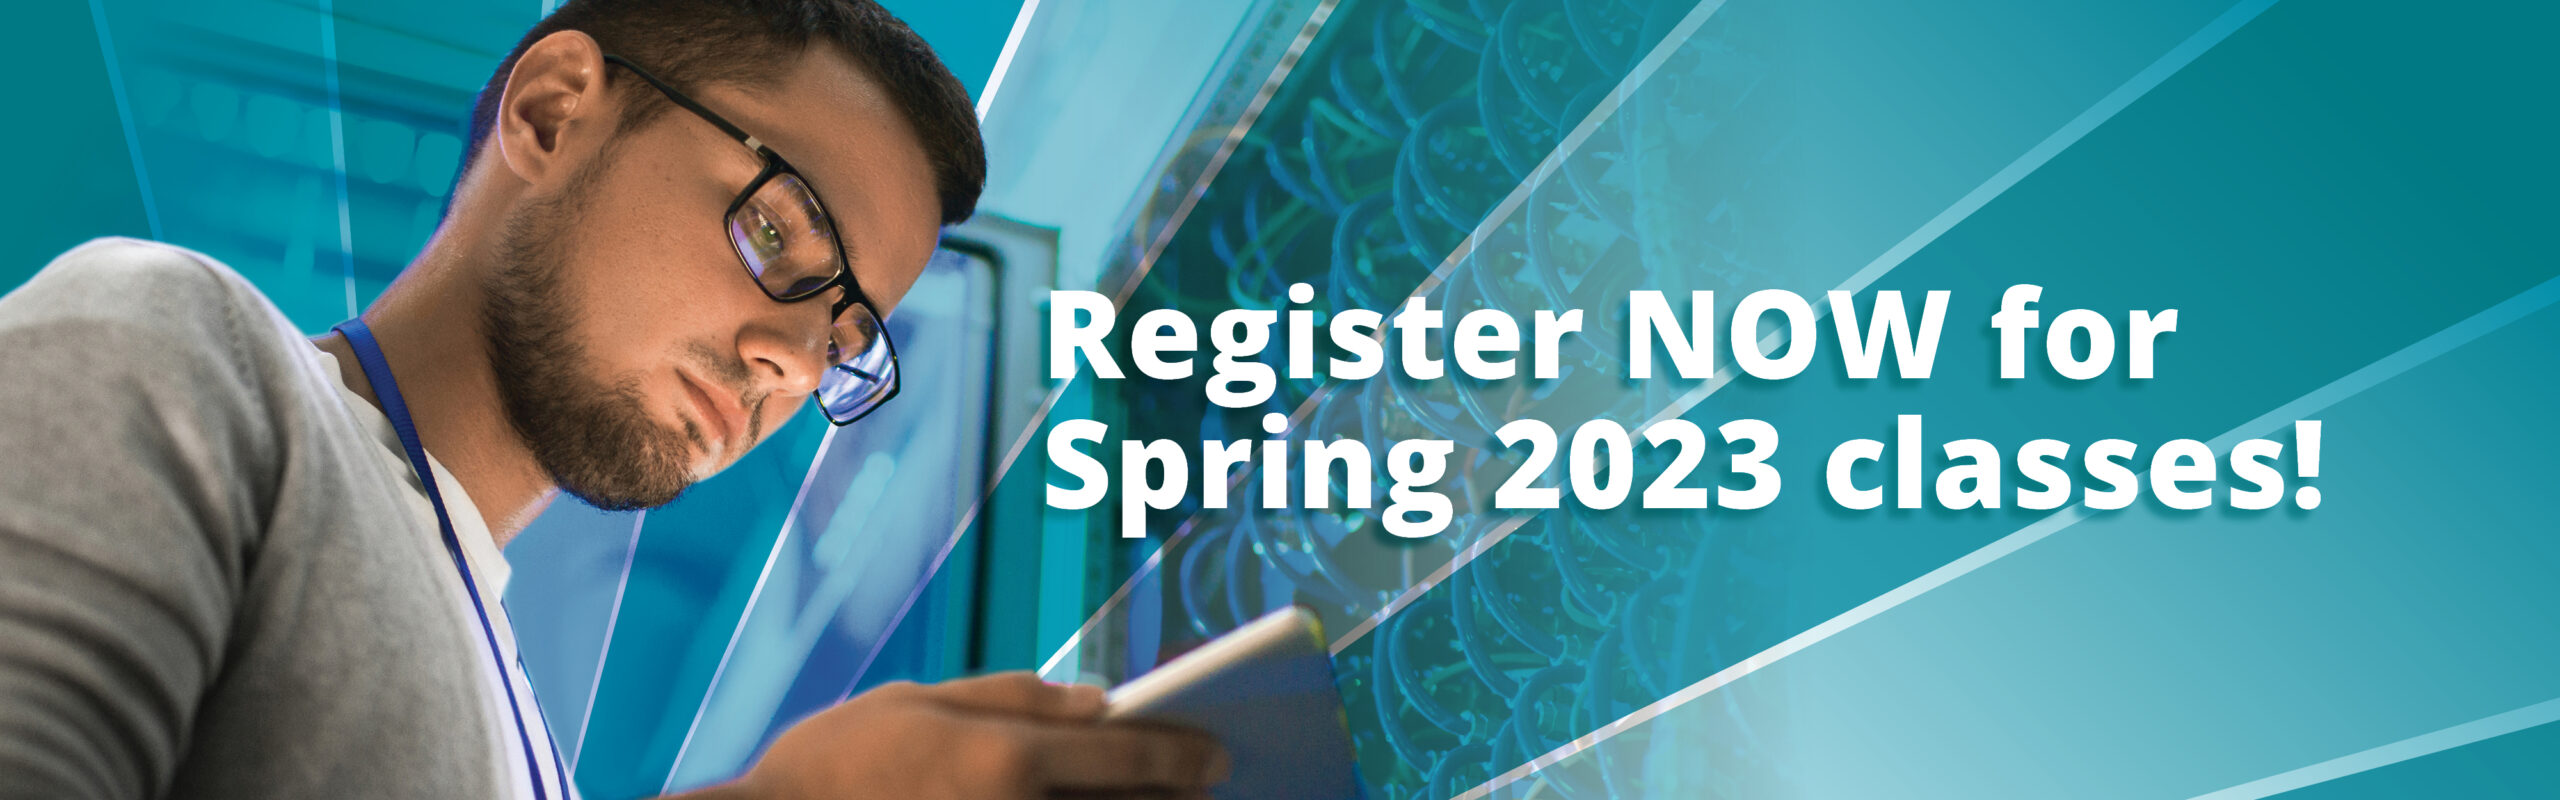 Register now for Spring 2023 classes